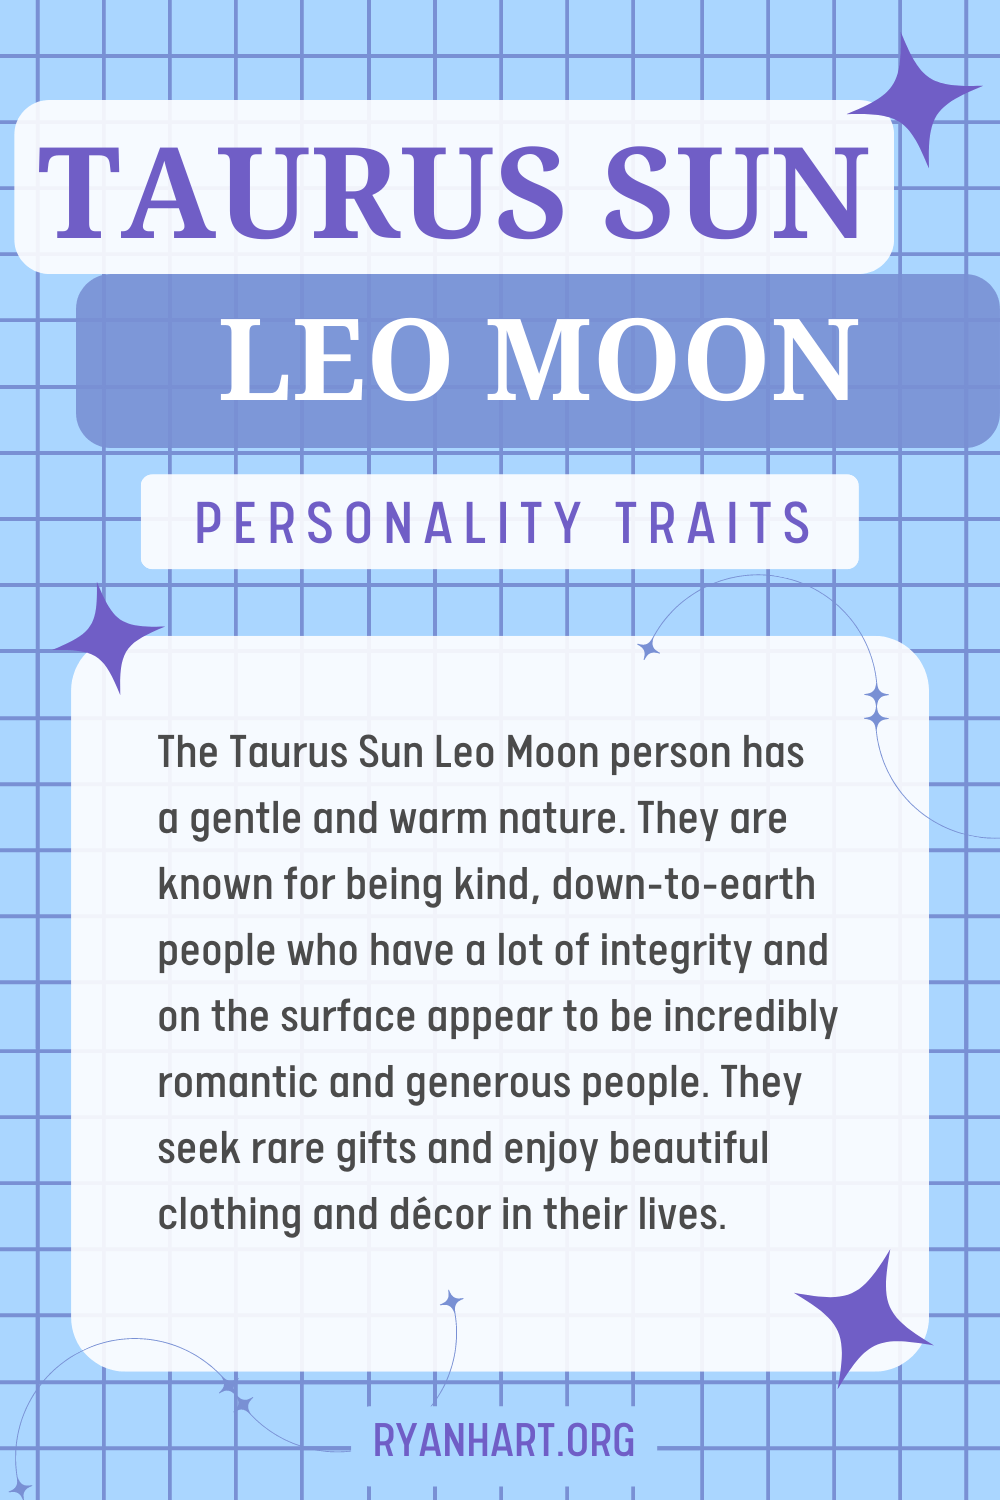 Taurus Sun Leo Moon Description